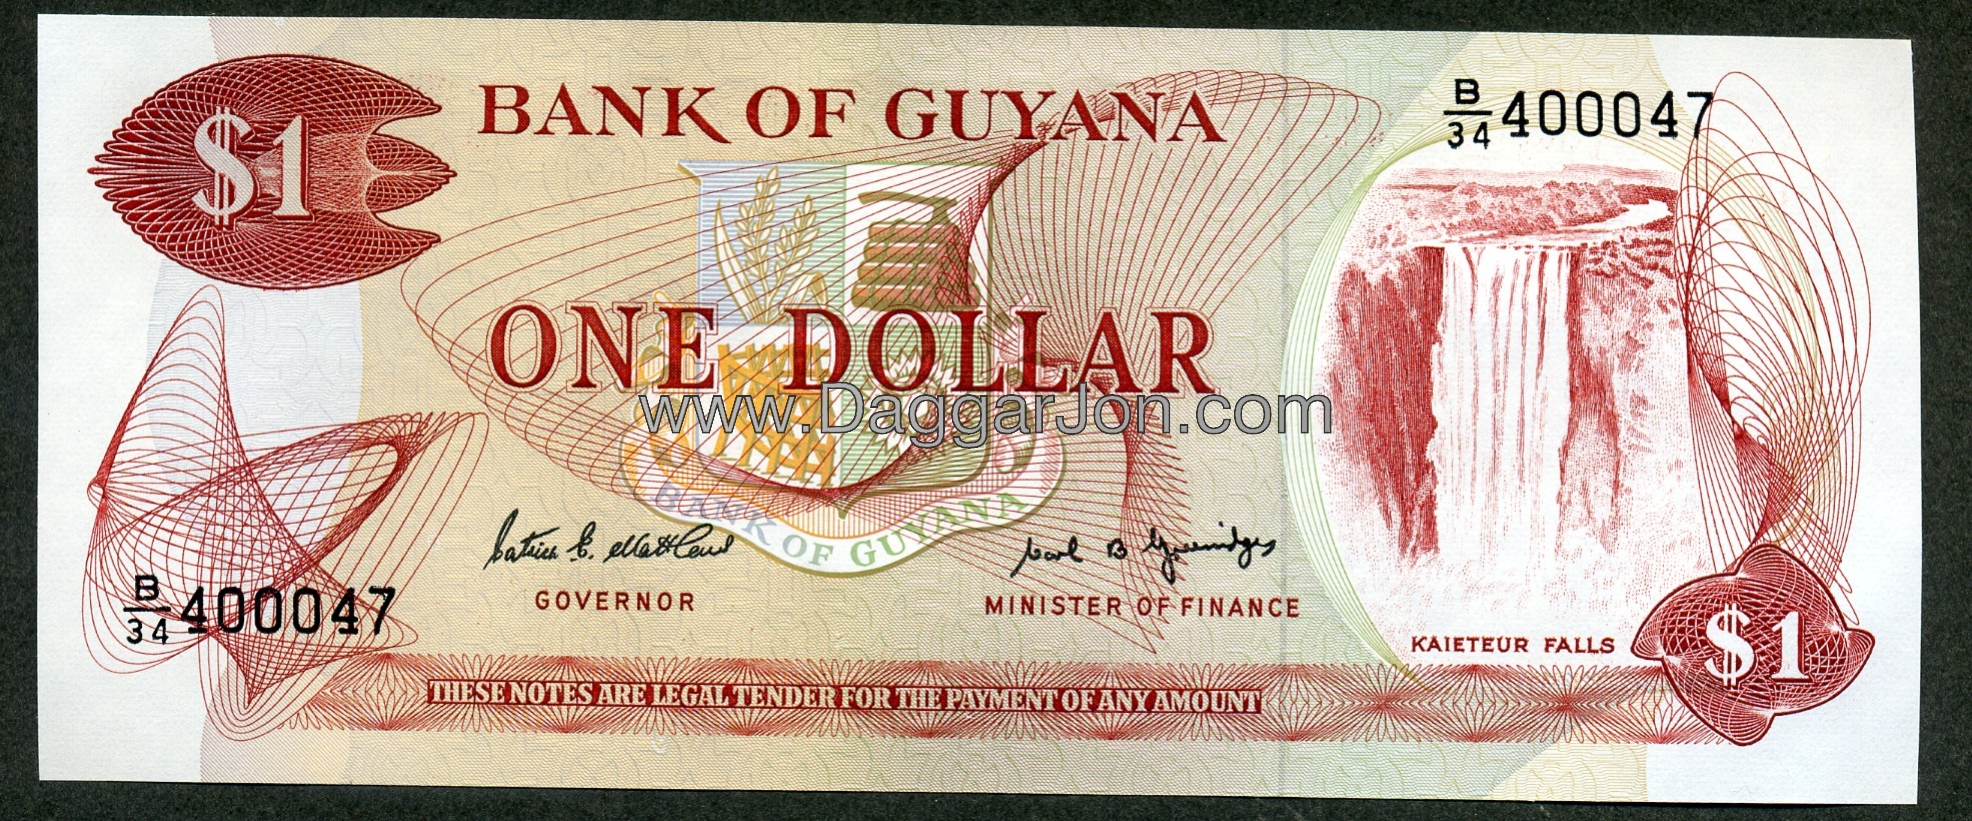 Guyanese dollarBack Guyana Dollars